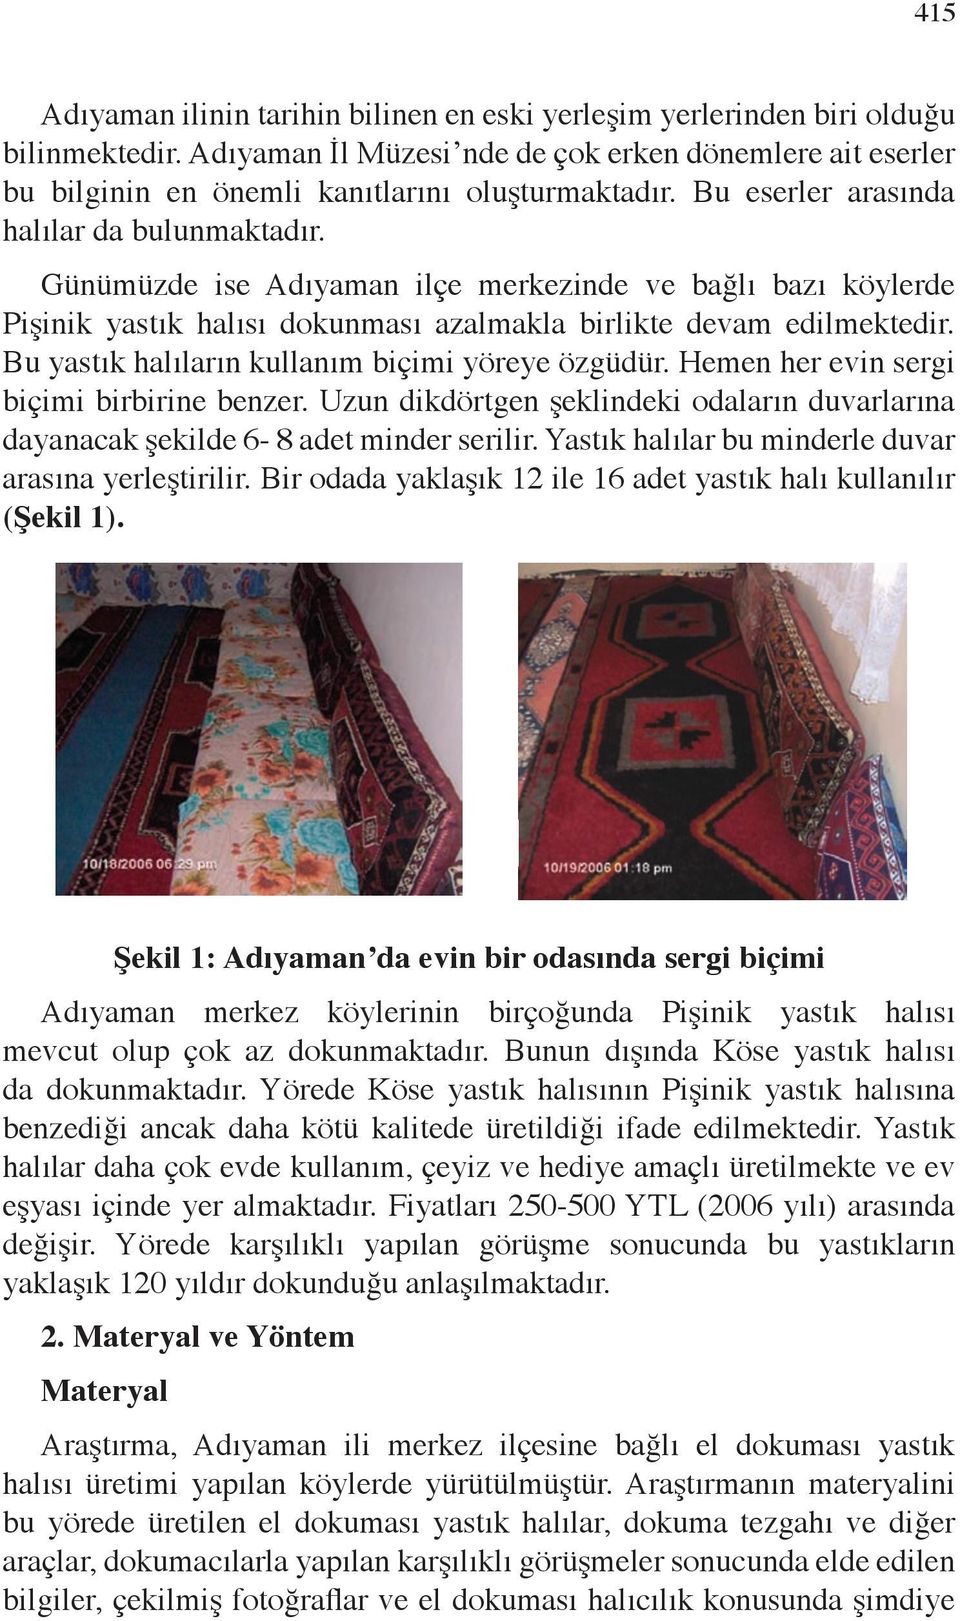 Sivas (Kayıpmaz ve Kayıpmaz, 1993;60), Kırşehir (Ölmez, 2002; ), Konya (Başaran, 2004; 36) yörelerinde yastık halısı dokunduğu ya da kullanıldığı bazı literatürde ifade edilmektedir.